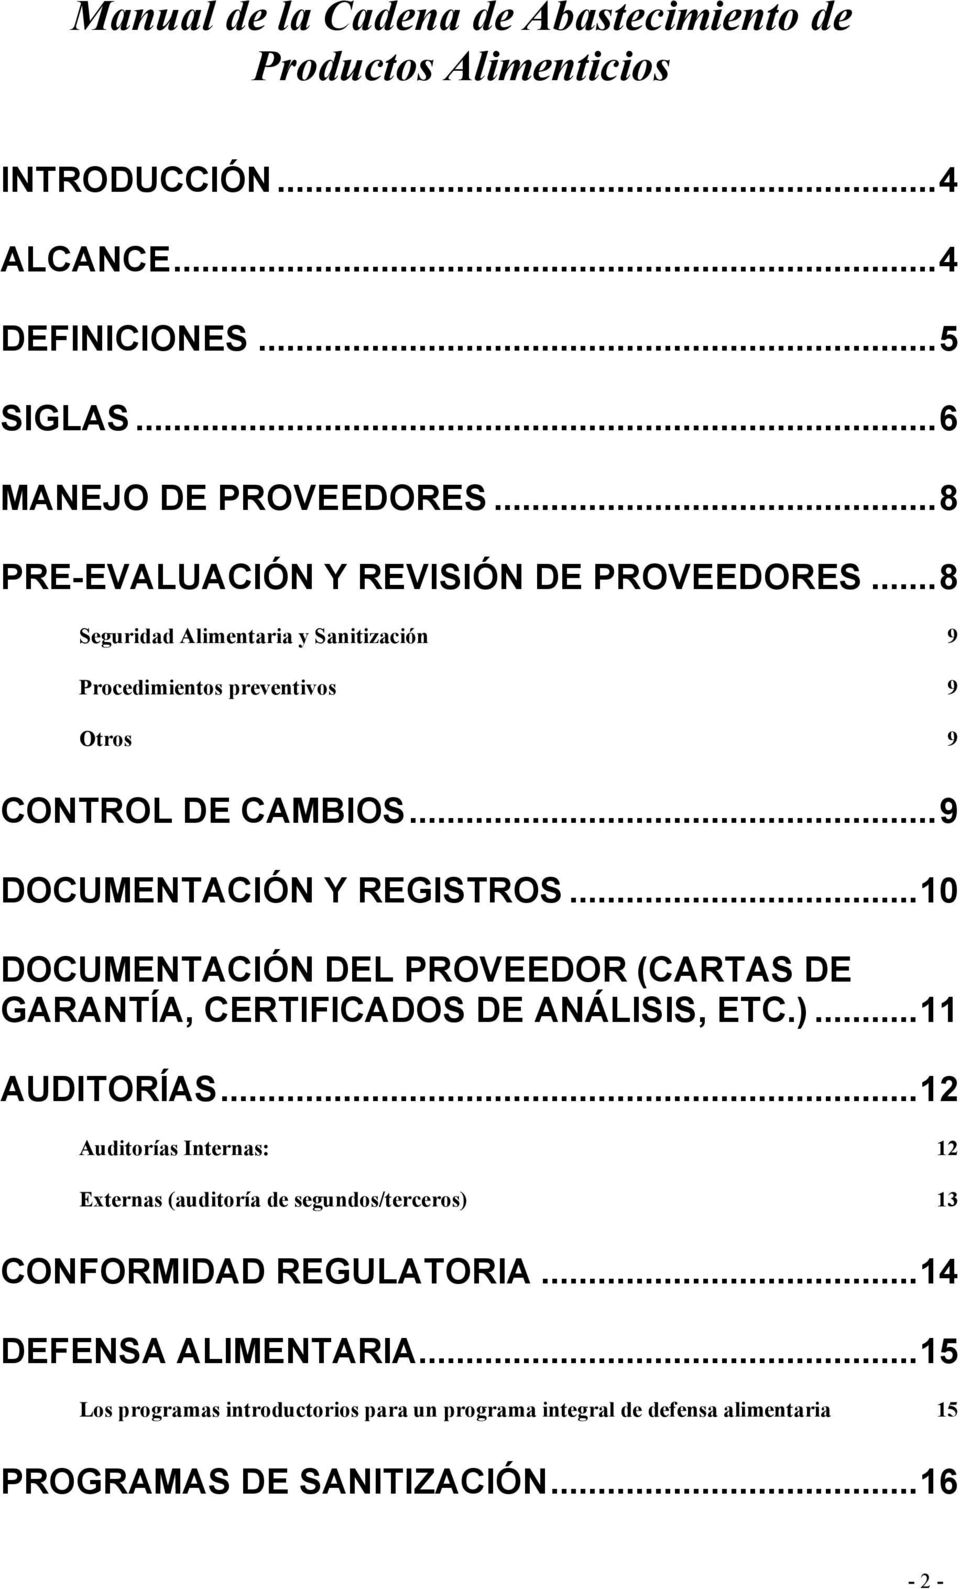 ..9 DOCUMENTACIÓN Y REGISTROS...10 DOCUMENTACIÓN DEL PROVEEDOR (CARTAS DE GARANTÍA, CERTIFICADOS DE ANÁLISIS, ETC.)...11 AUDITORÍAS.